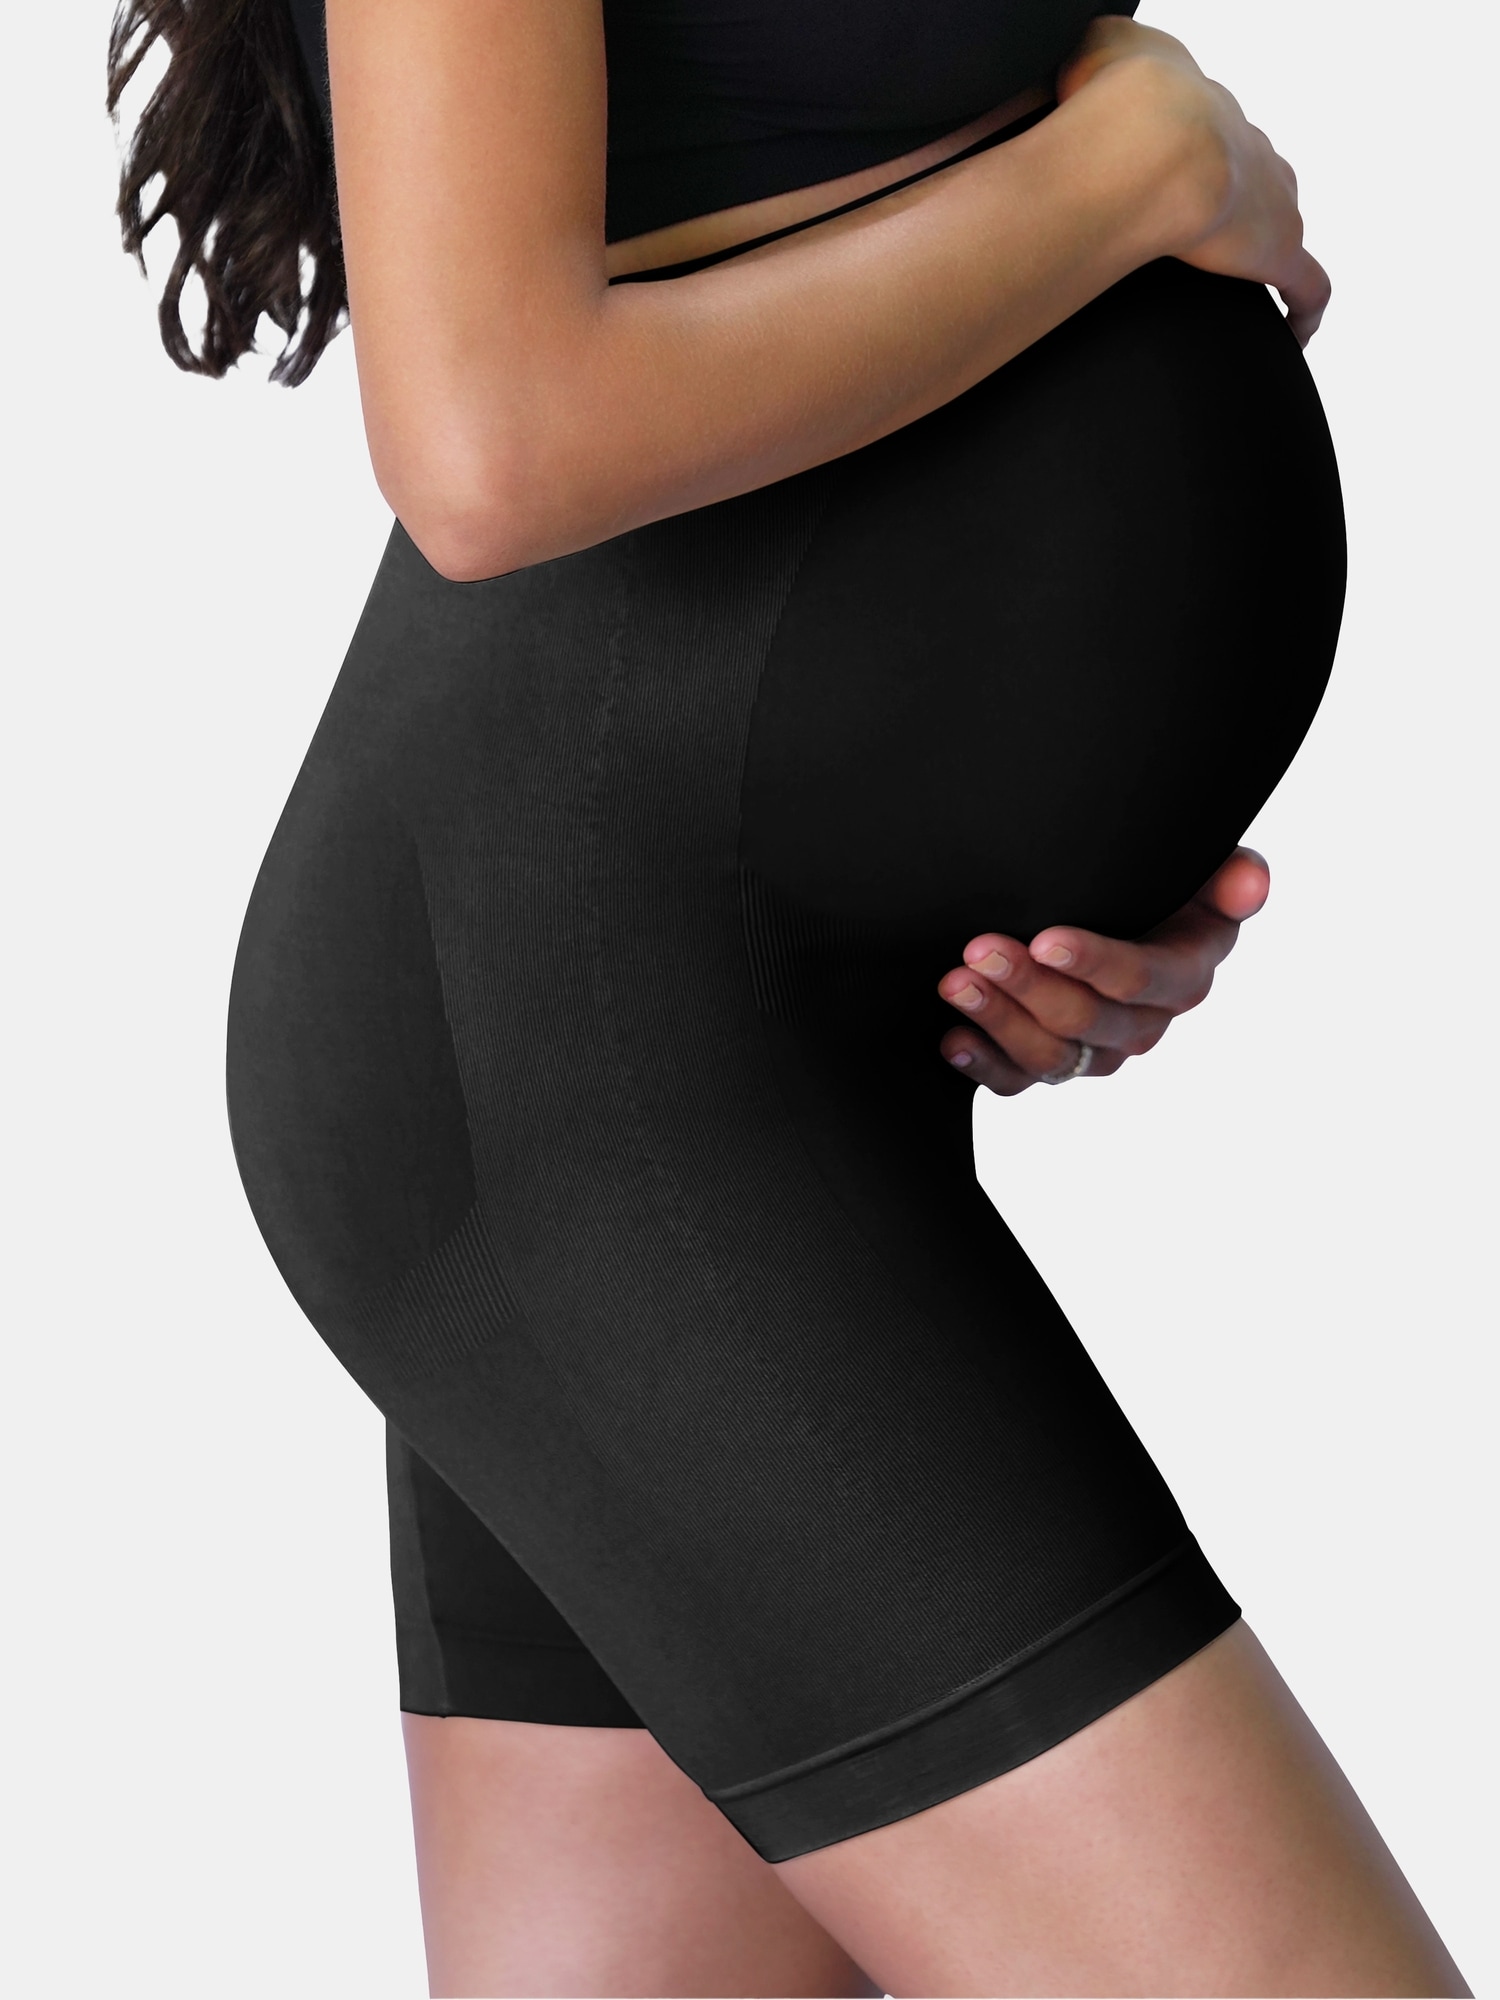 Duckwalk😂❤️ Maternity wear frm: @preethi.shapewear.in ❤️ . #shanpavi  #boocouples #love #loveyou #maternity #maternitywear #pre